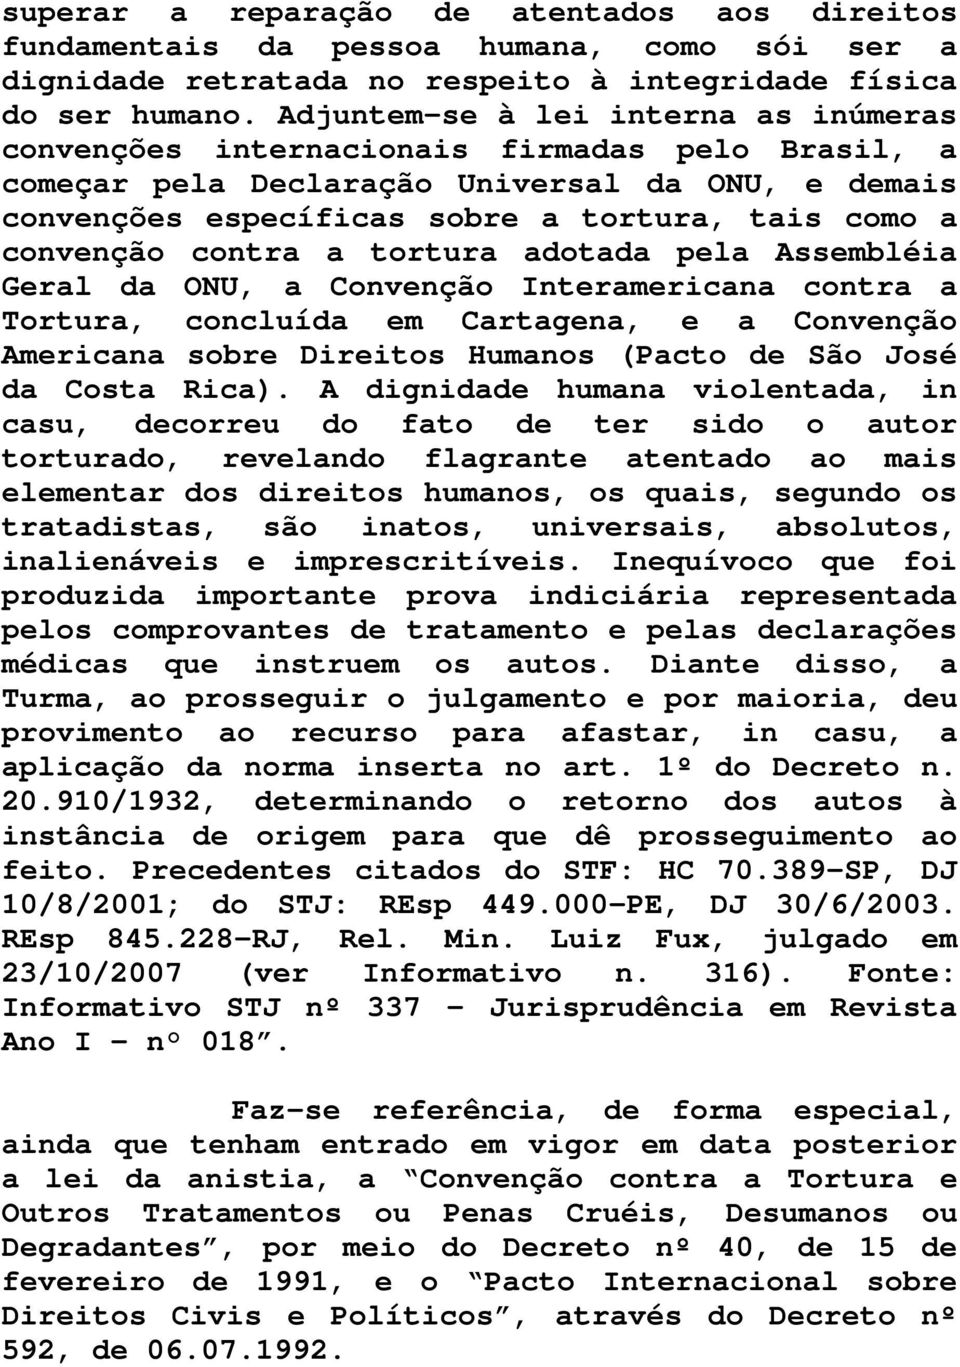 convenção contra a tortura adotada pela Assembléia Geral da ONU, a Convenção Interamericana contra a Tortura, concluída em Cartagena, e a Convenção Americana sobre Direitos Humanos (Pacto de São José